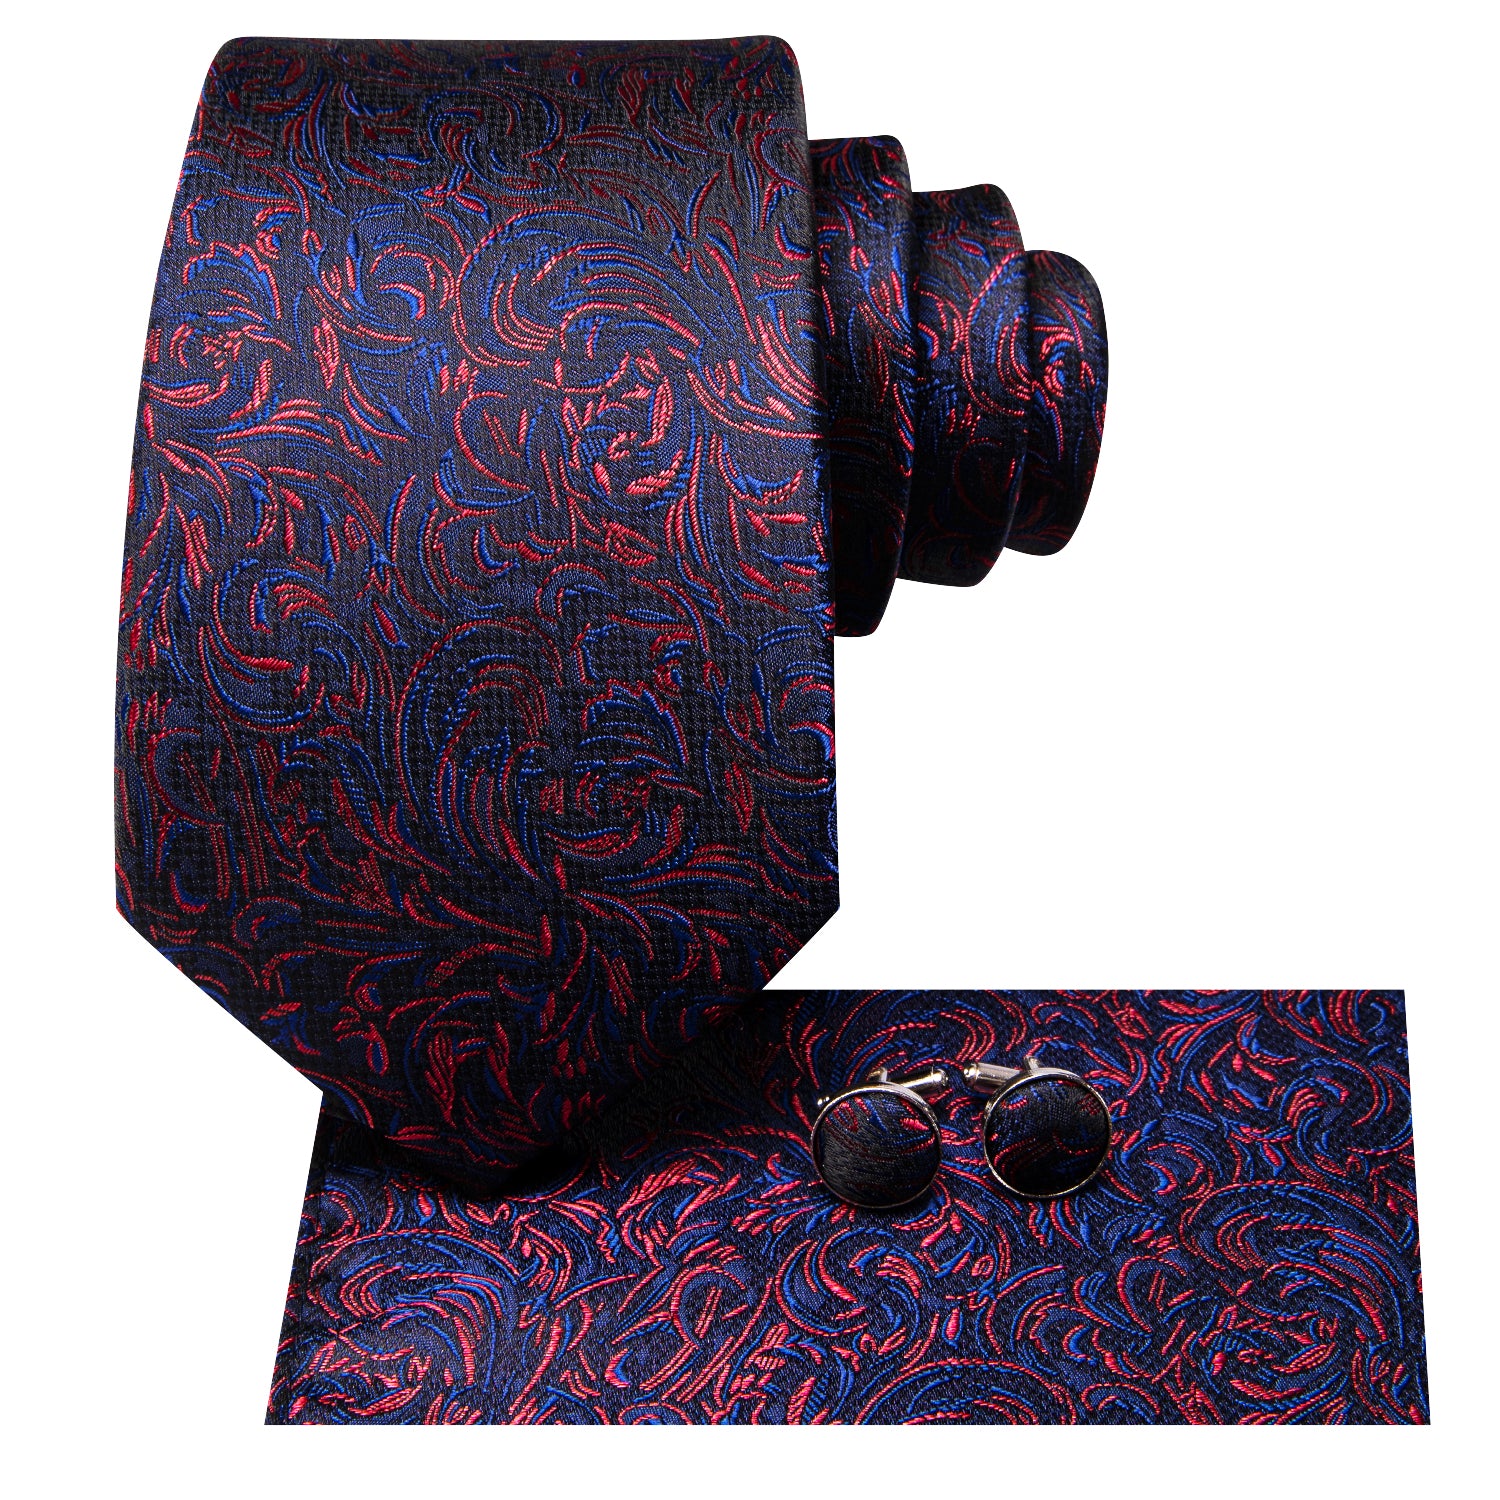 Hi-Tie Blue Red Floral Novelty Men's Tie Pocket Square Cufflinks Set